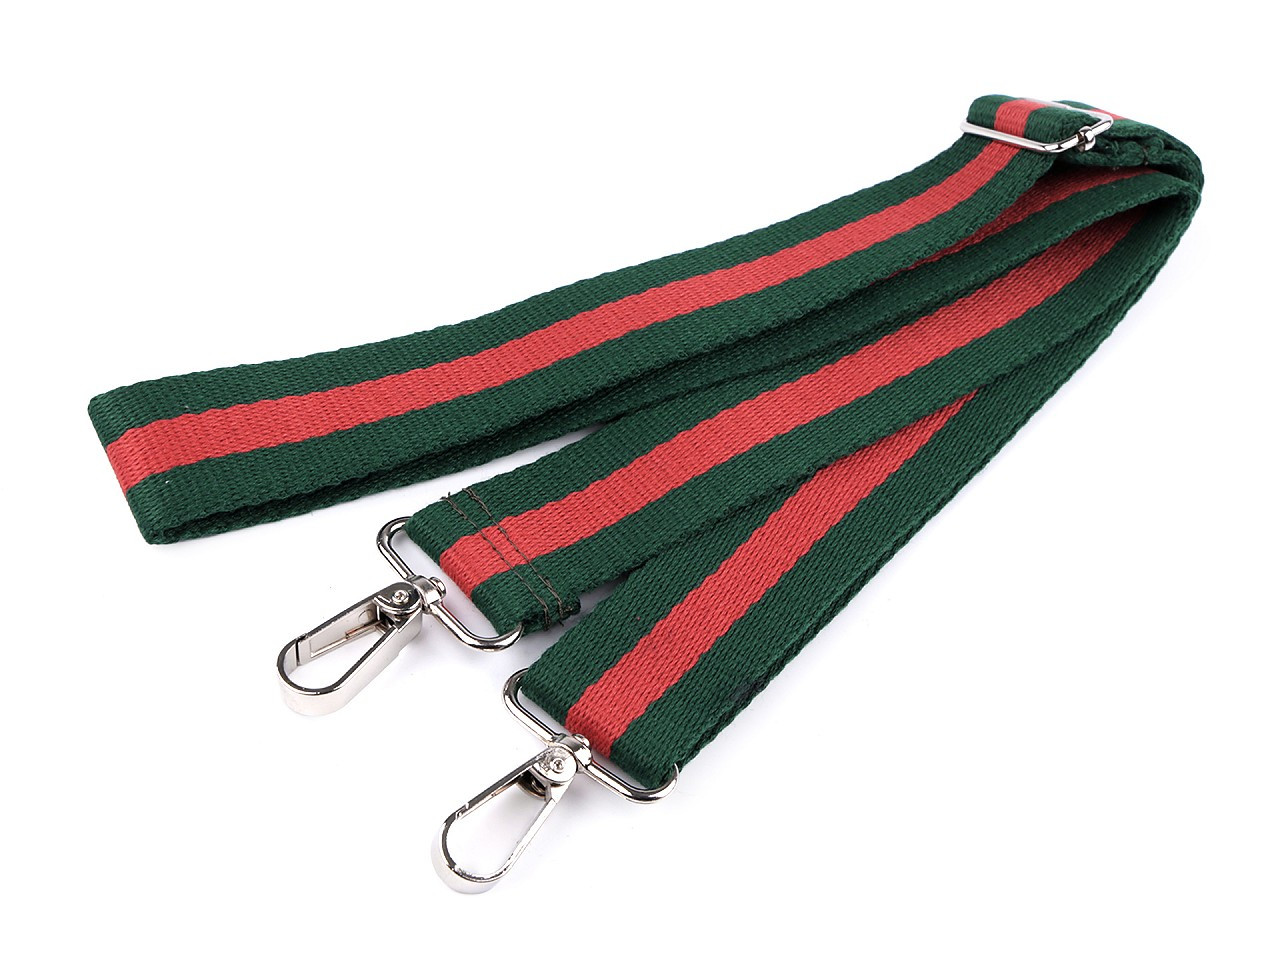 Textilní ucho / popruh na tašku s karabinami šíře 3,8 cm, barva 14 zelená tmavá červená